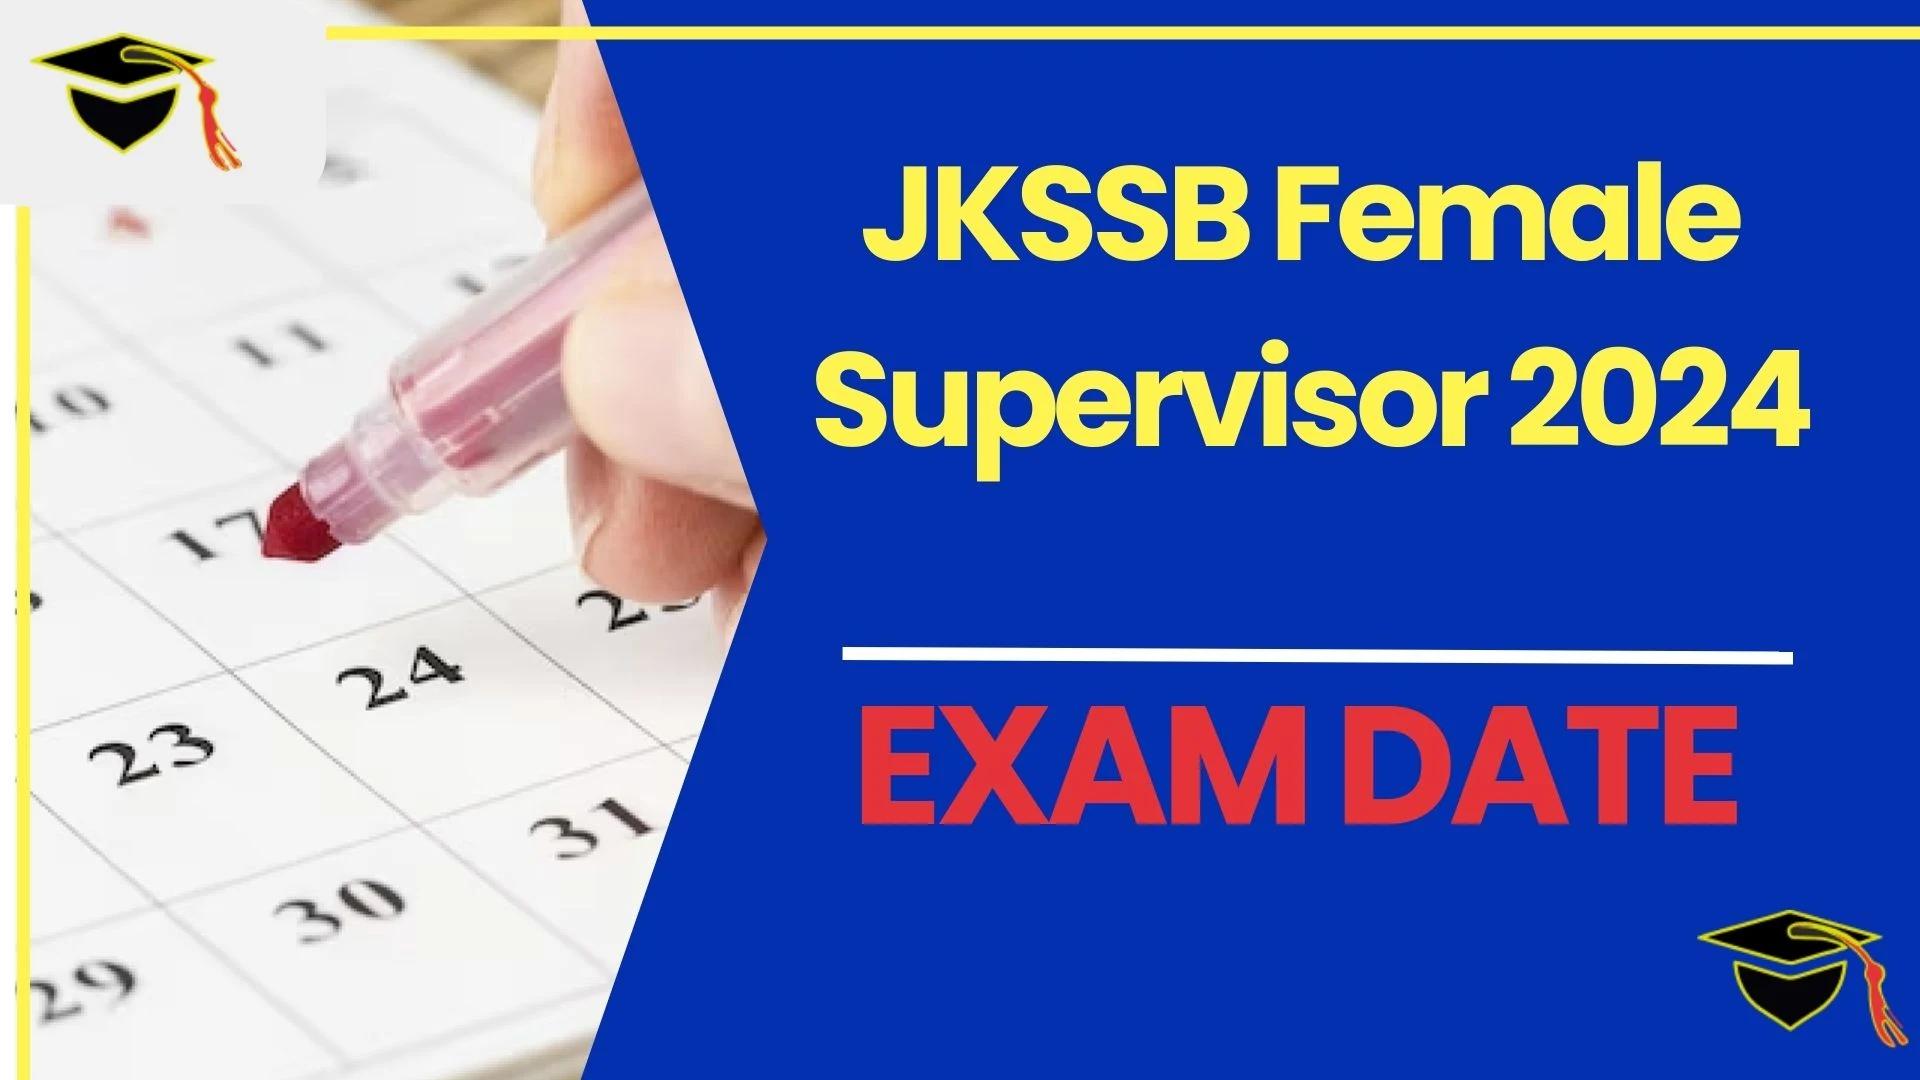 JKSSB Female Supervisor Exam Date 2024 Mark Your Calendar